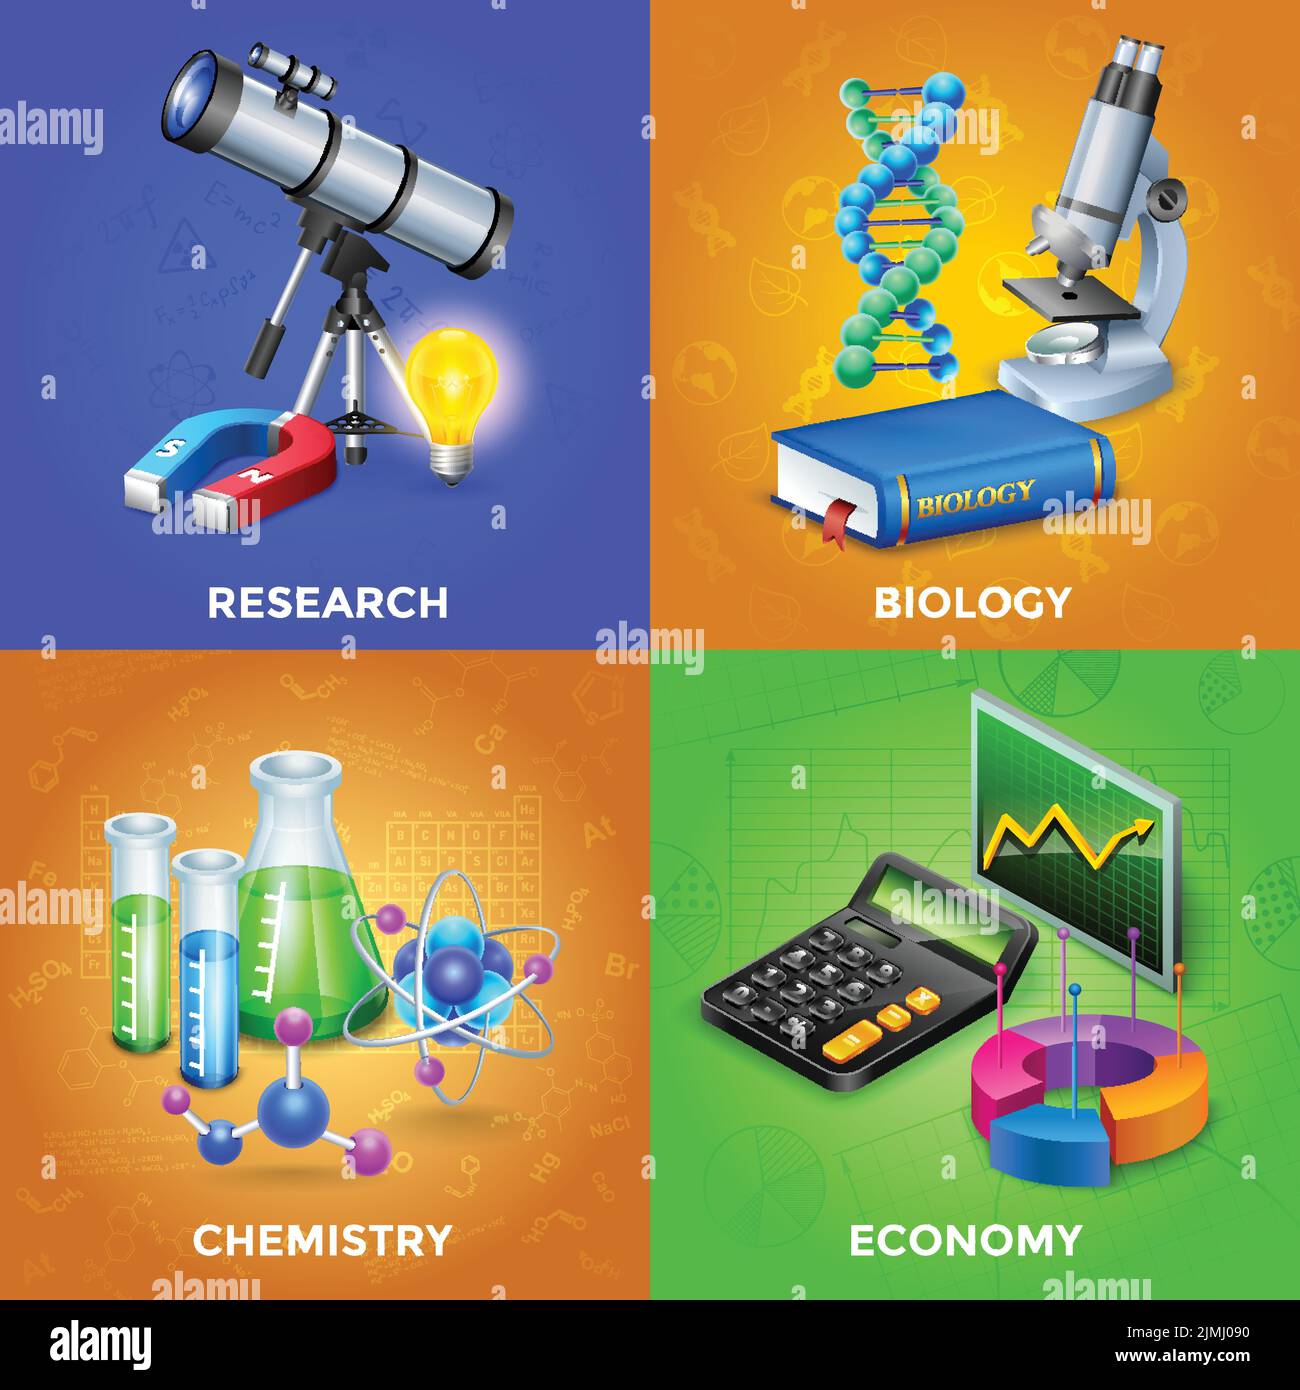 Kit de conception scientifique 2x2 avec équipement pour la biologie chimique et illustration de vecteur de recherche physique Illustration de Vecteur